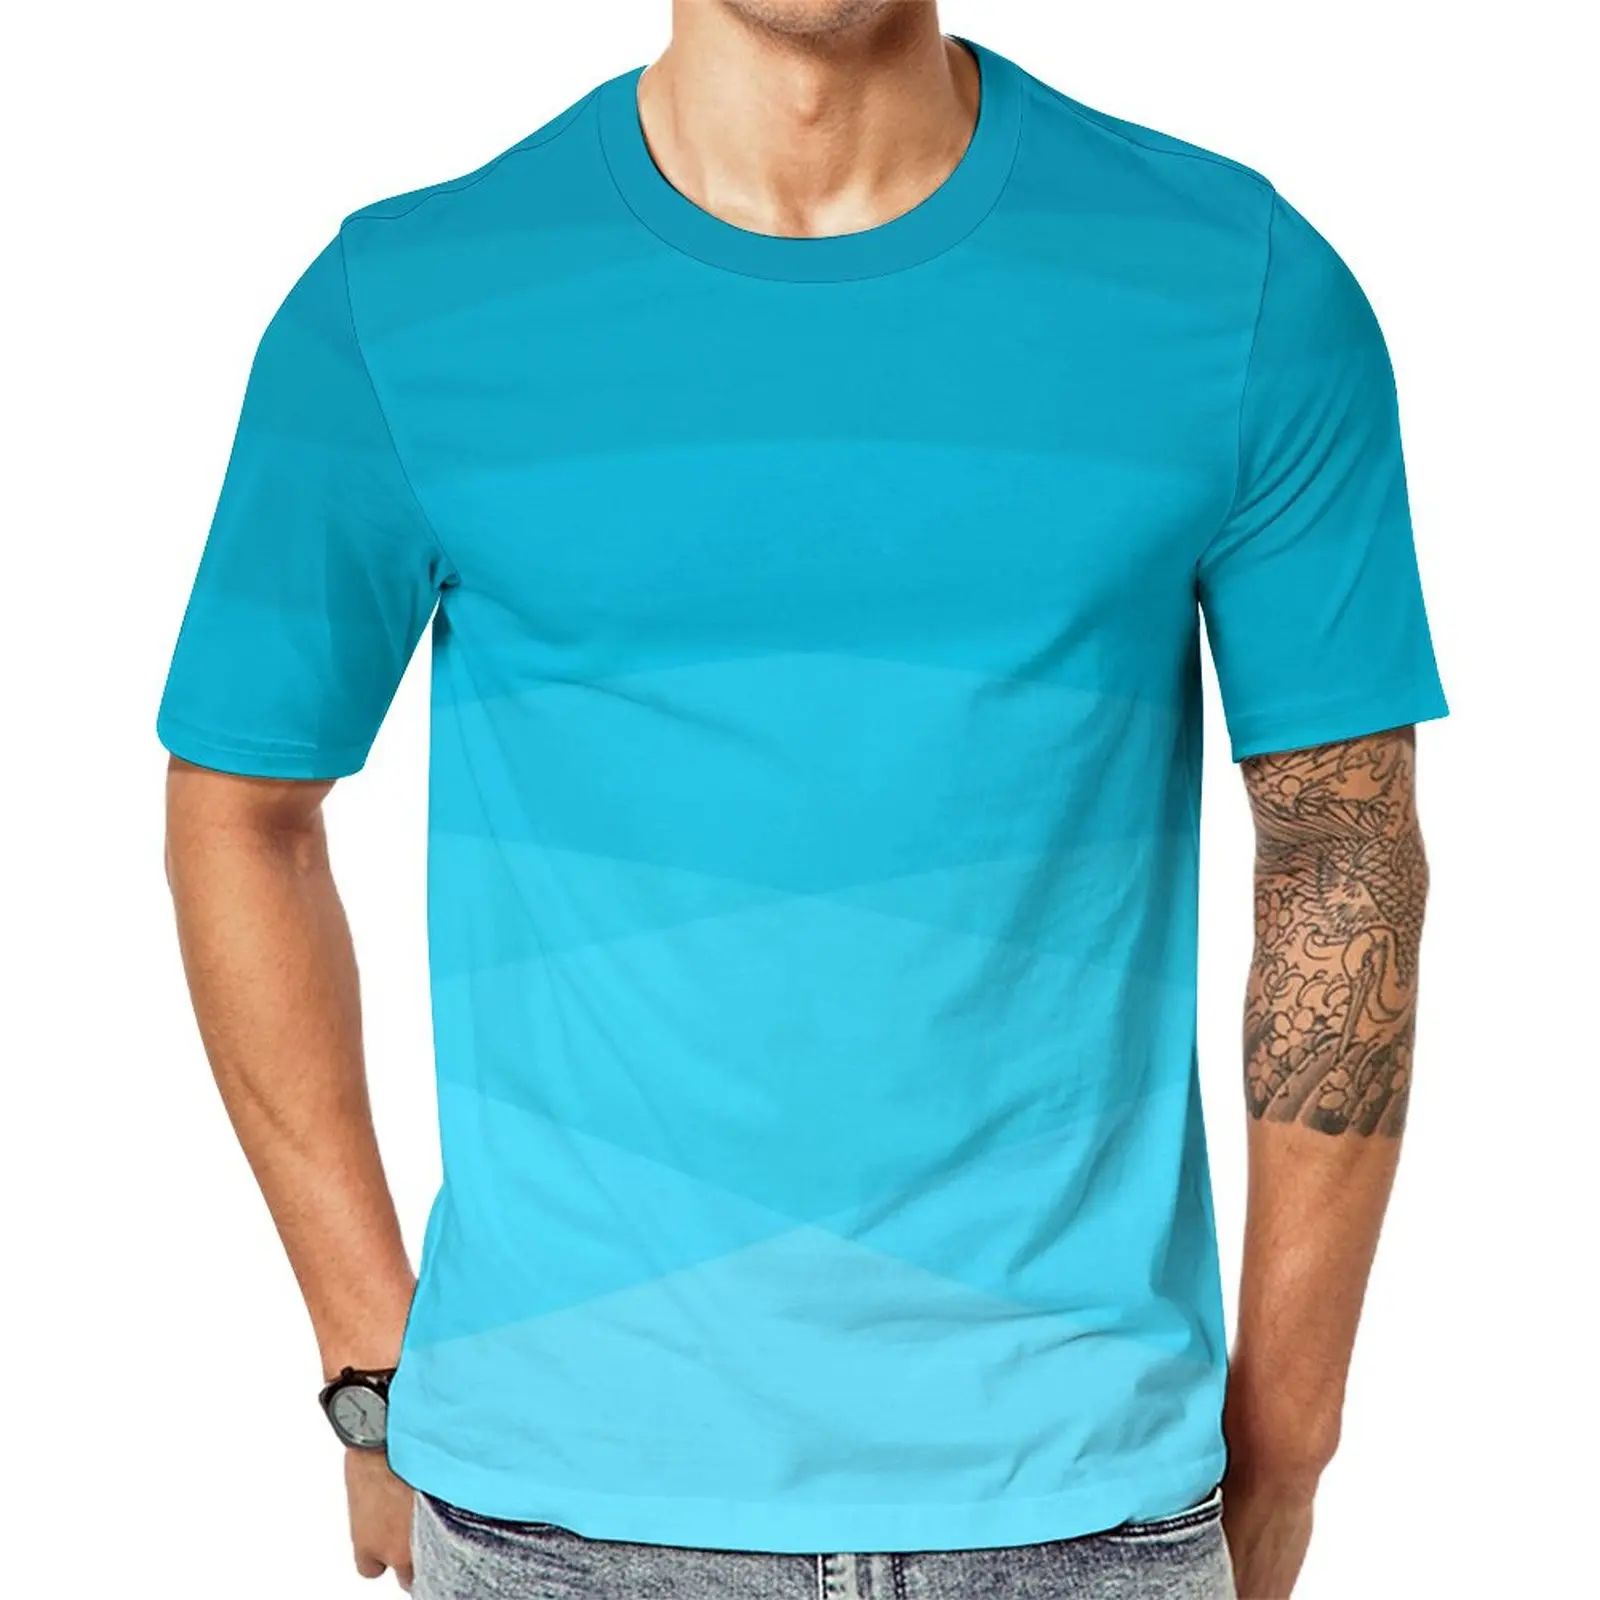 

Футболка с принтом Омбре, градиентная синяя многоугольная модная футболка для пары, Премиум футболка с коротким рукавом Y2K, одежда оверсайз в подарок